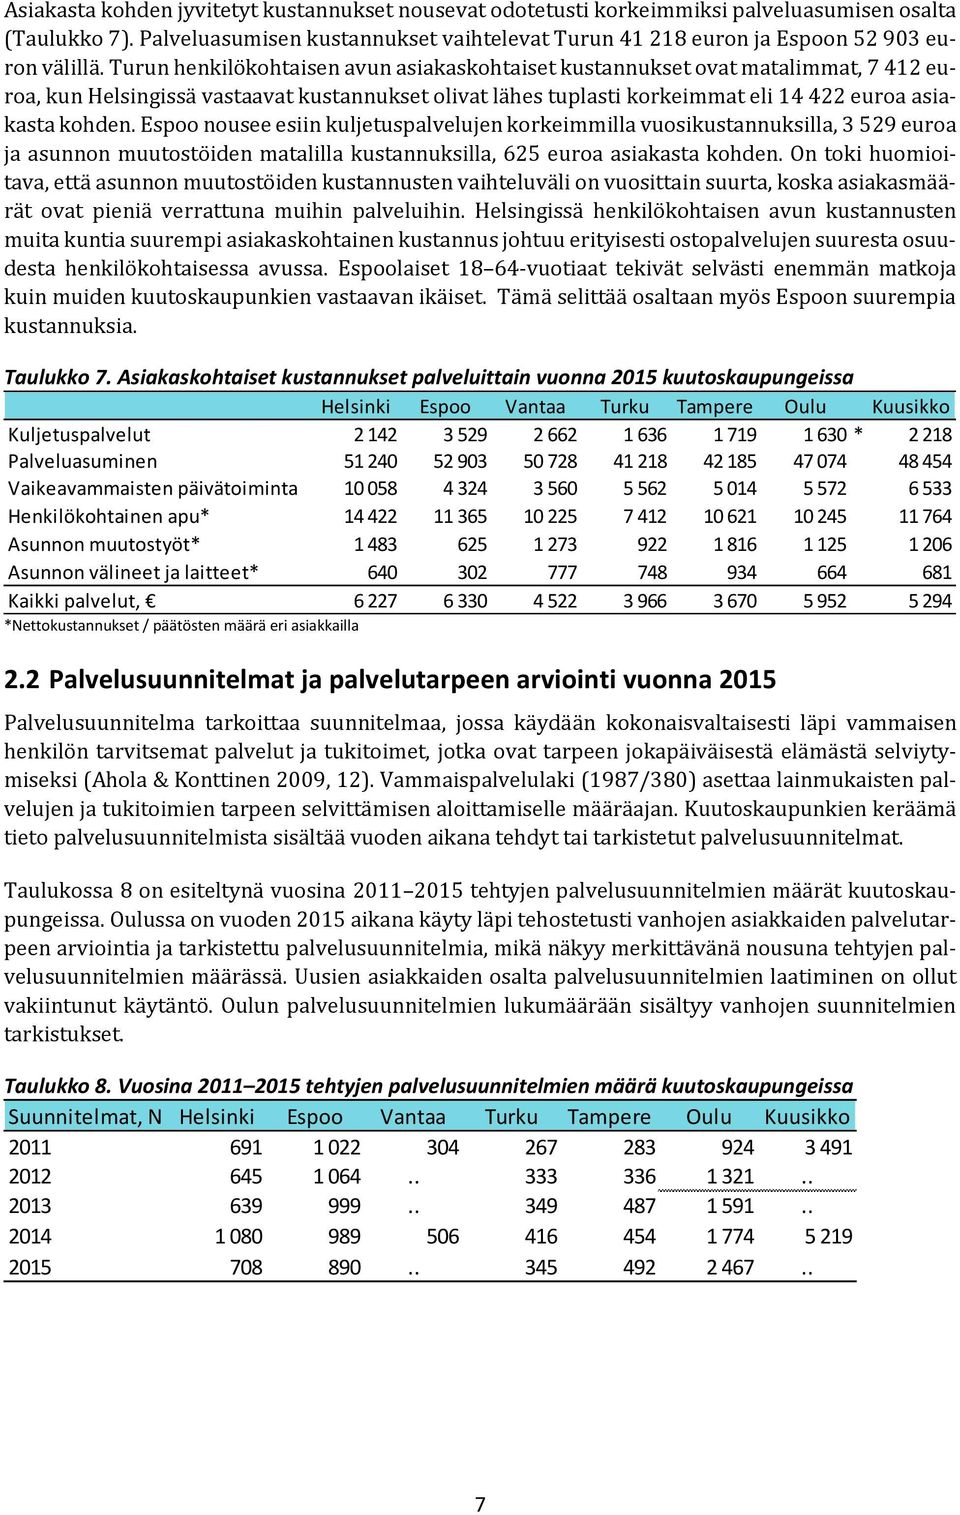 Turun henkilökohtaisen avun asiakaskohtaiset kustannukset ovat matalimmat, 7 412 euroa, kun Helsingissä vastaavat kustannukset olivat lähes tuplasti korkeimmat eli 14 422 euroa asiakasta kohden.